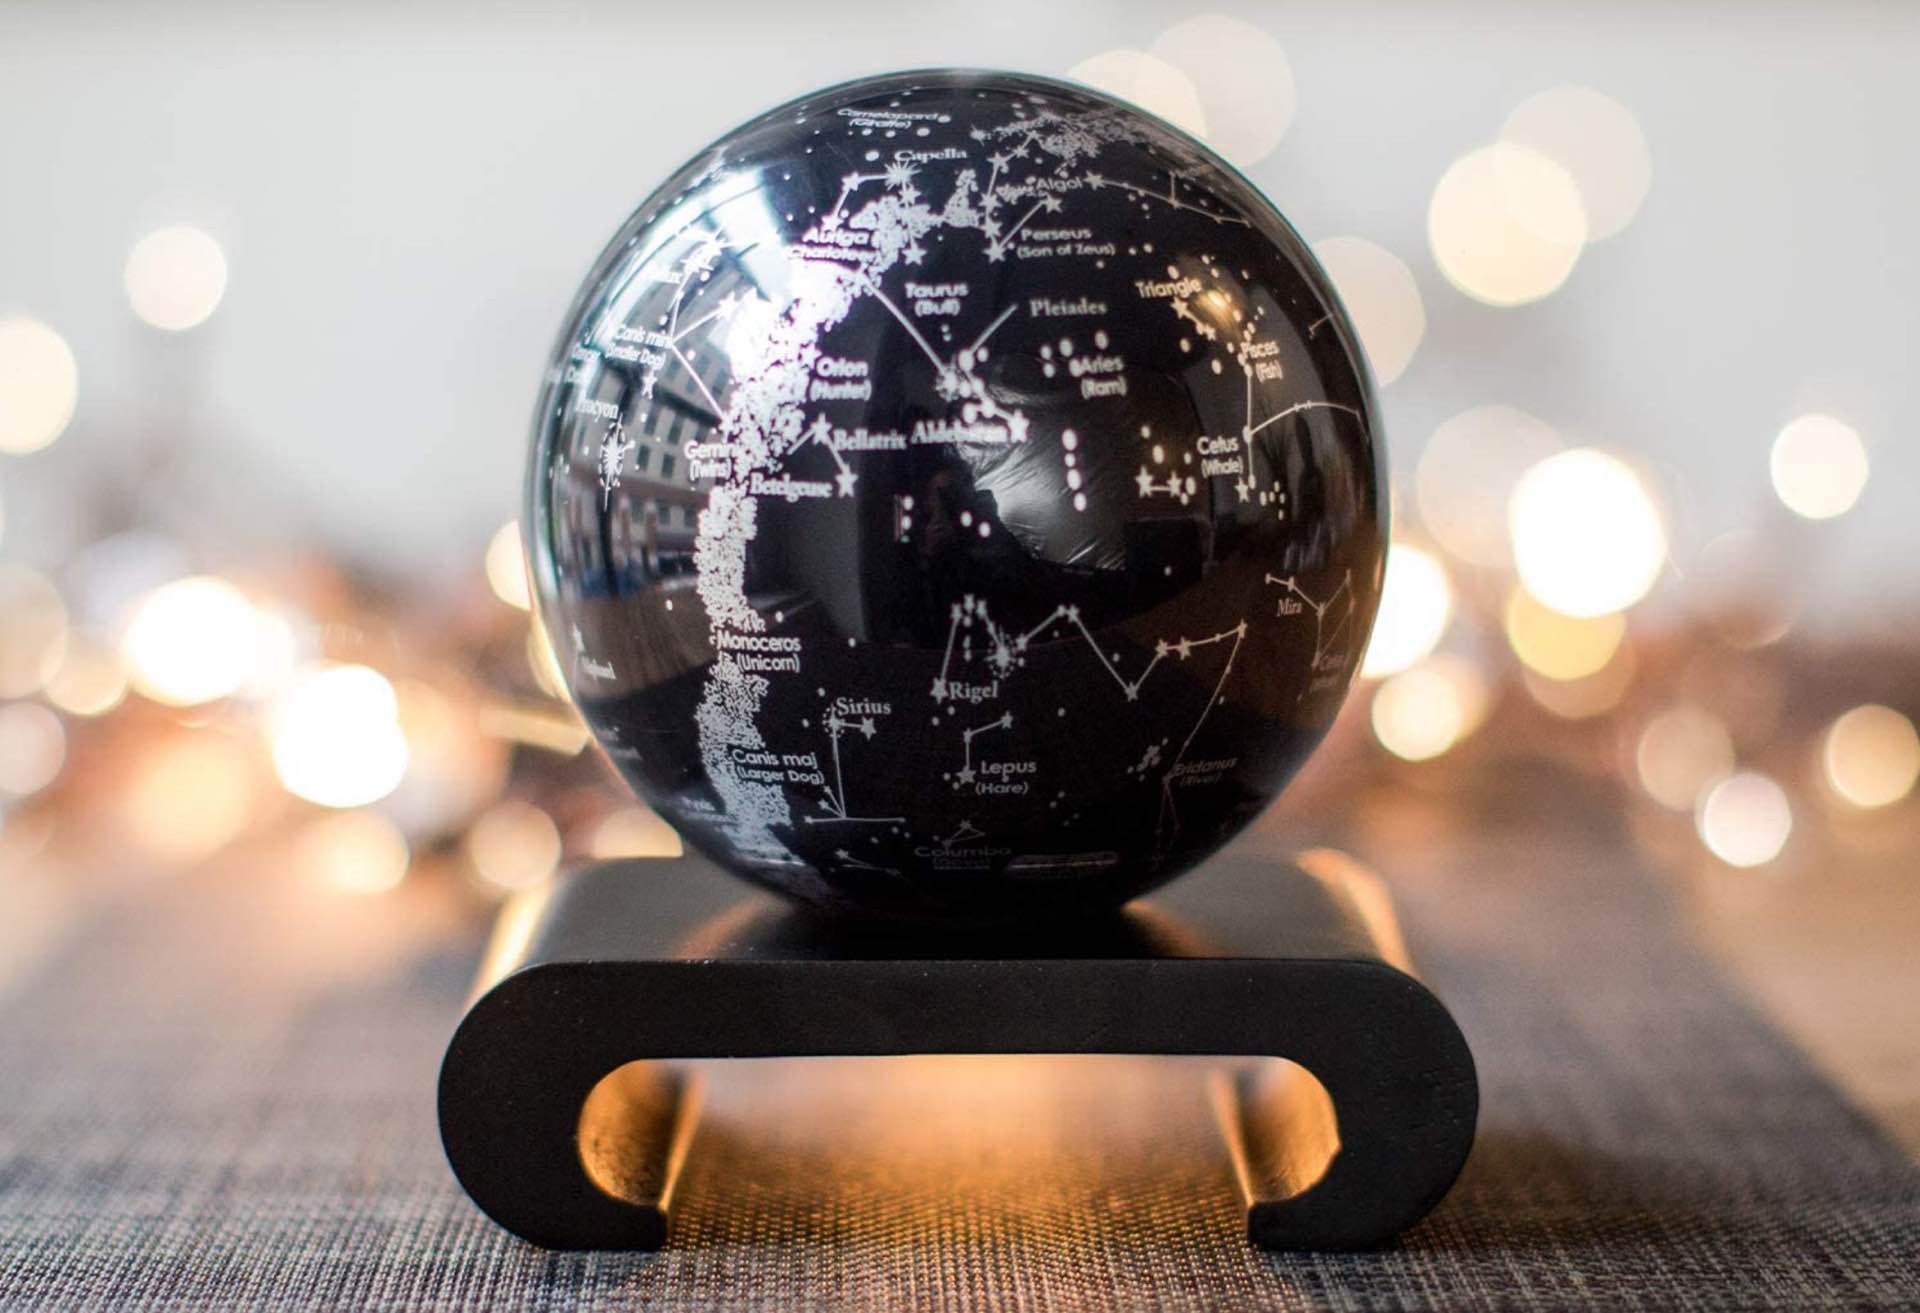 MOVA self-rotating globes. ($180 for a 4.5" globe, $280 for a 6" globe)